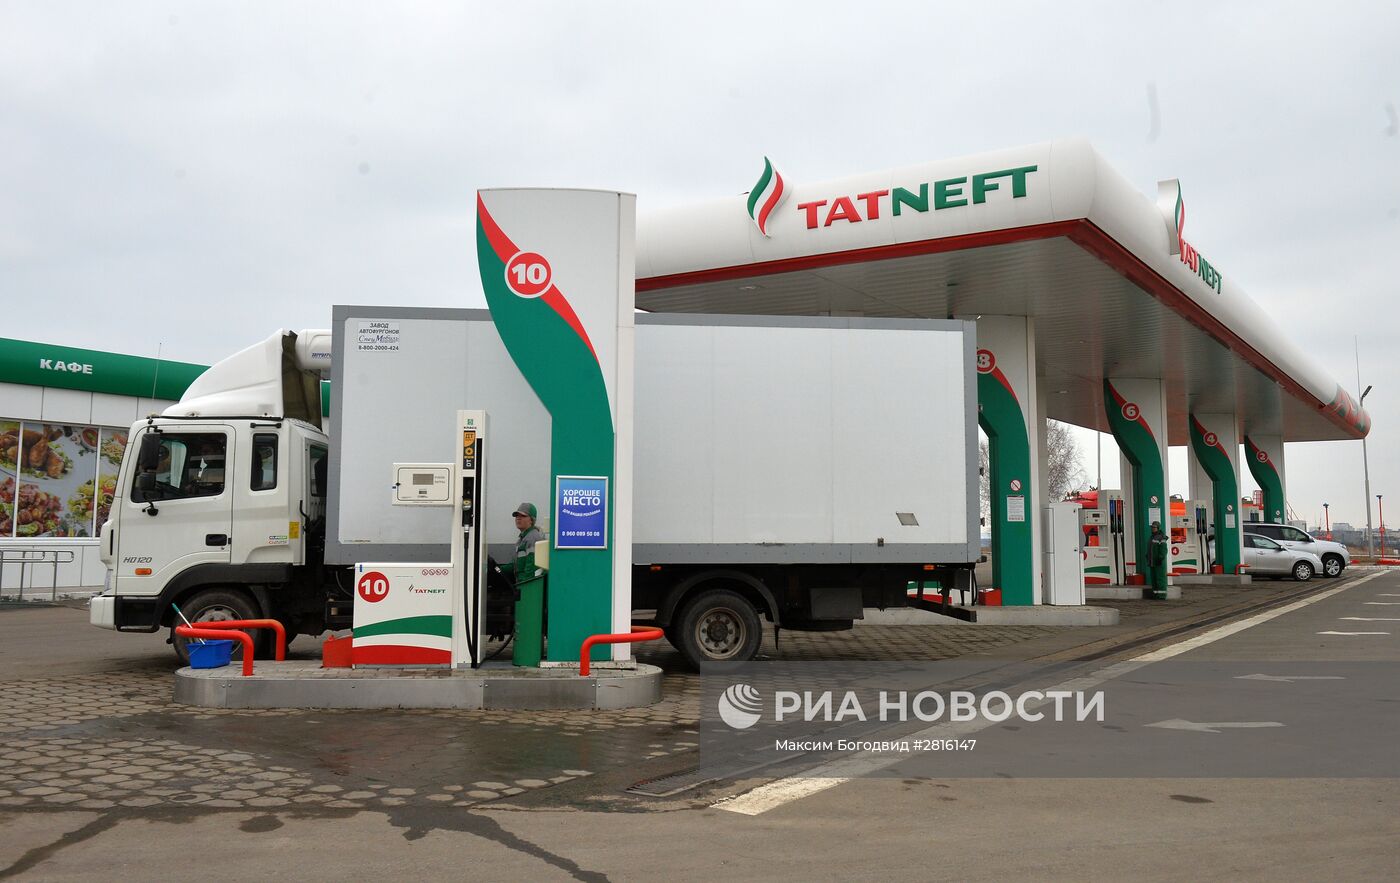 Объекты производственного объединения "Татнефть" в Республике Татарстан